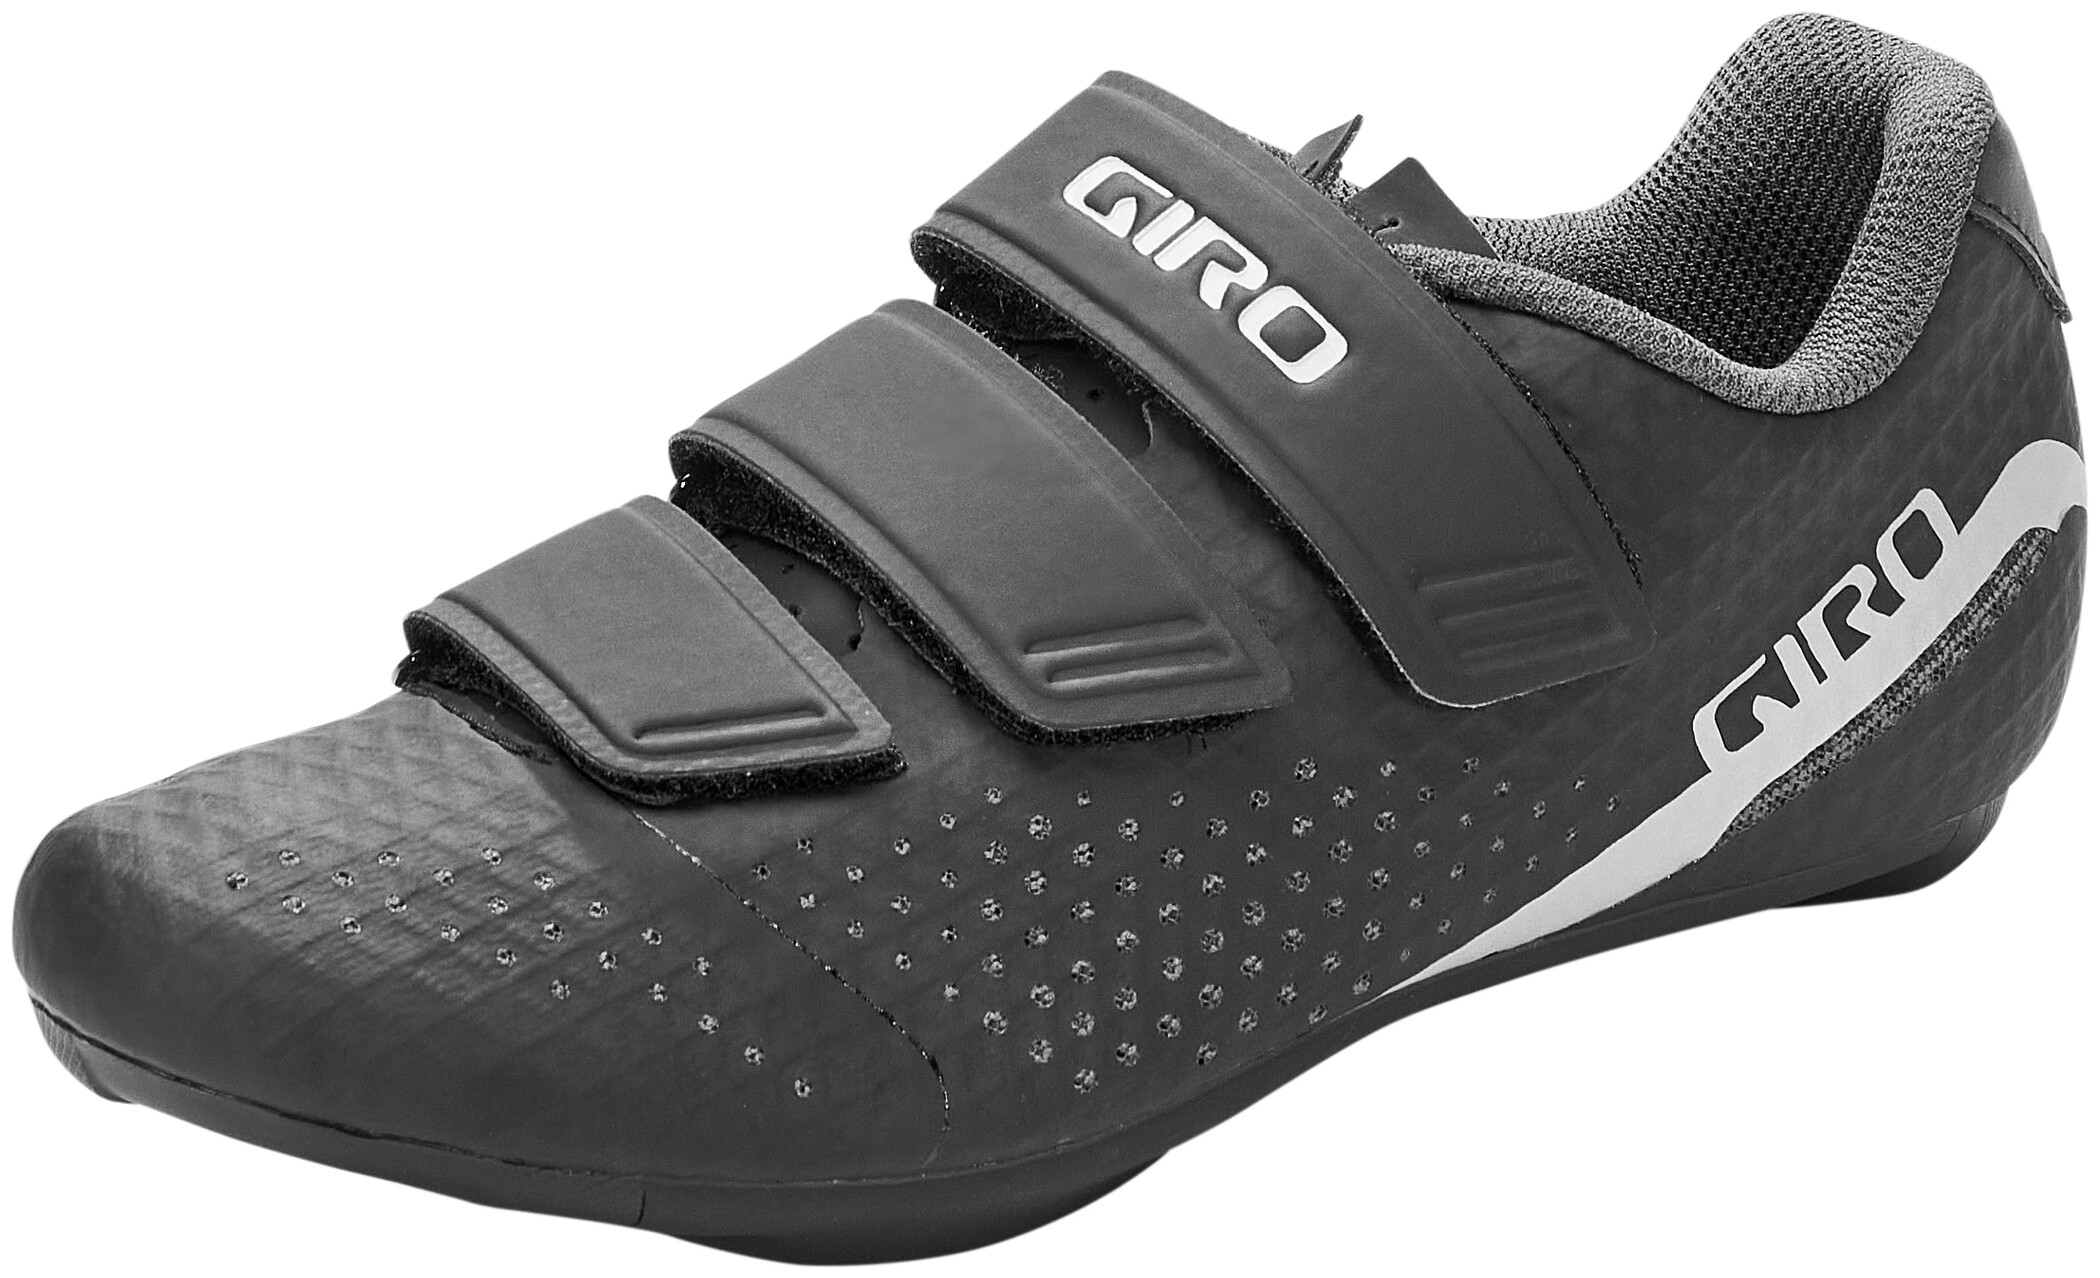 Giro - Stylus | cycling shoes